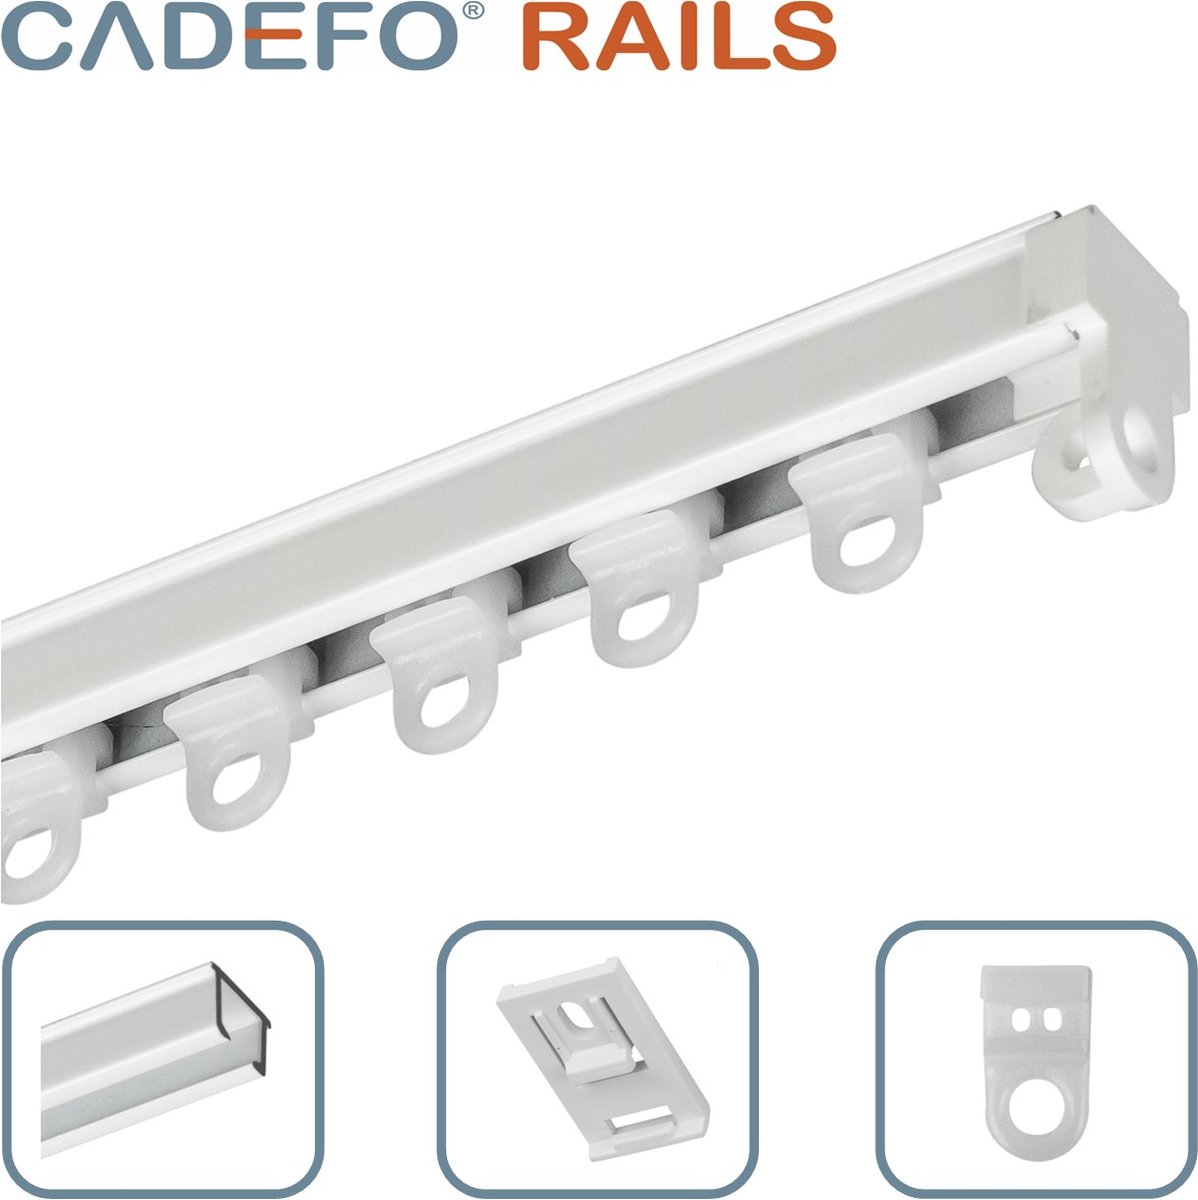 CADEFO RAILS (451 - 500 cm) Gordijnrails - Compleet op maat! - UIT 1 STUK - Leverbaar tot 6 meter - Plafondbevestiging - Lengte 466 cm